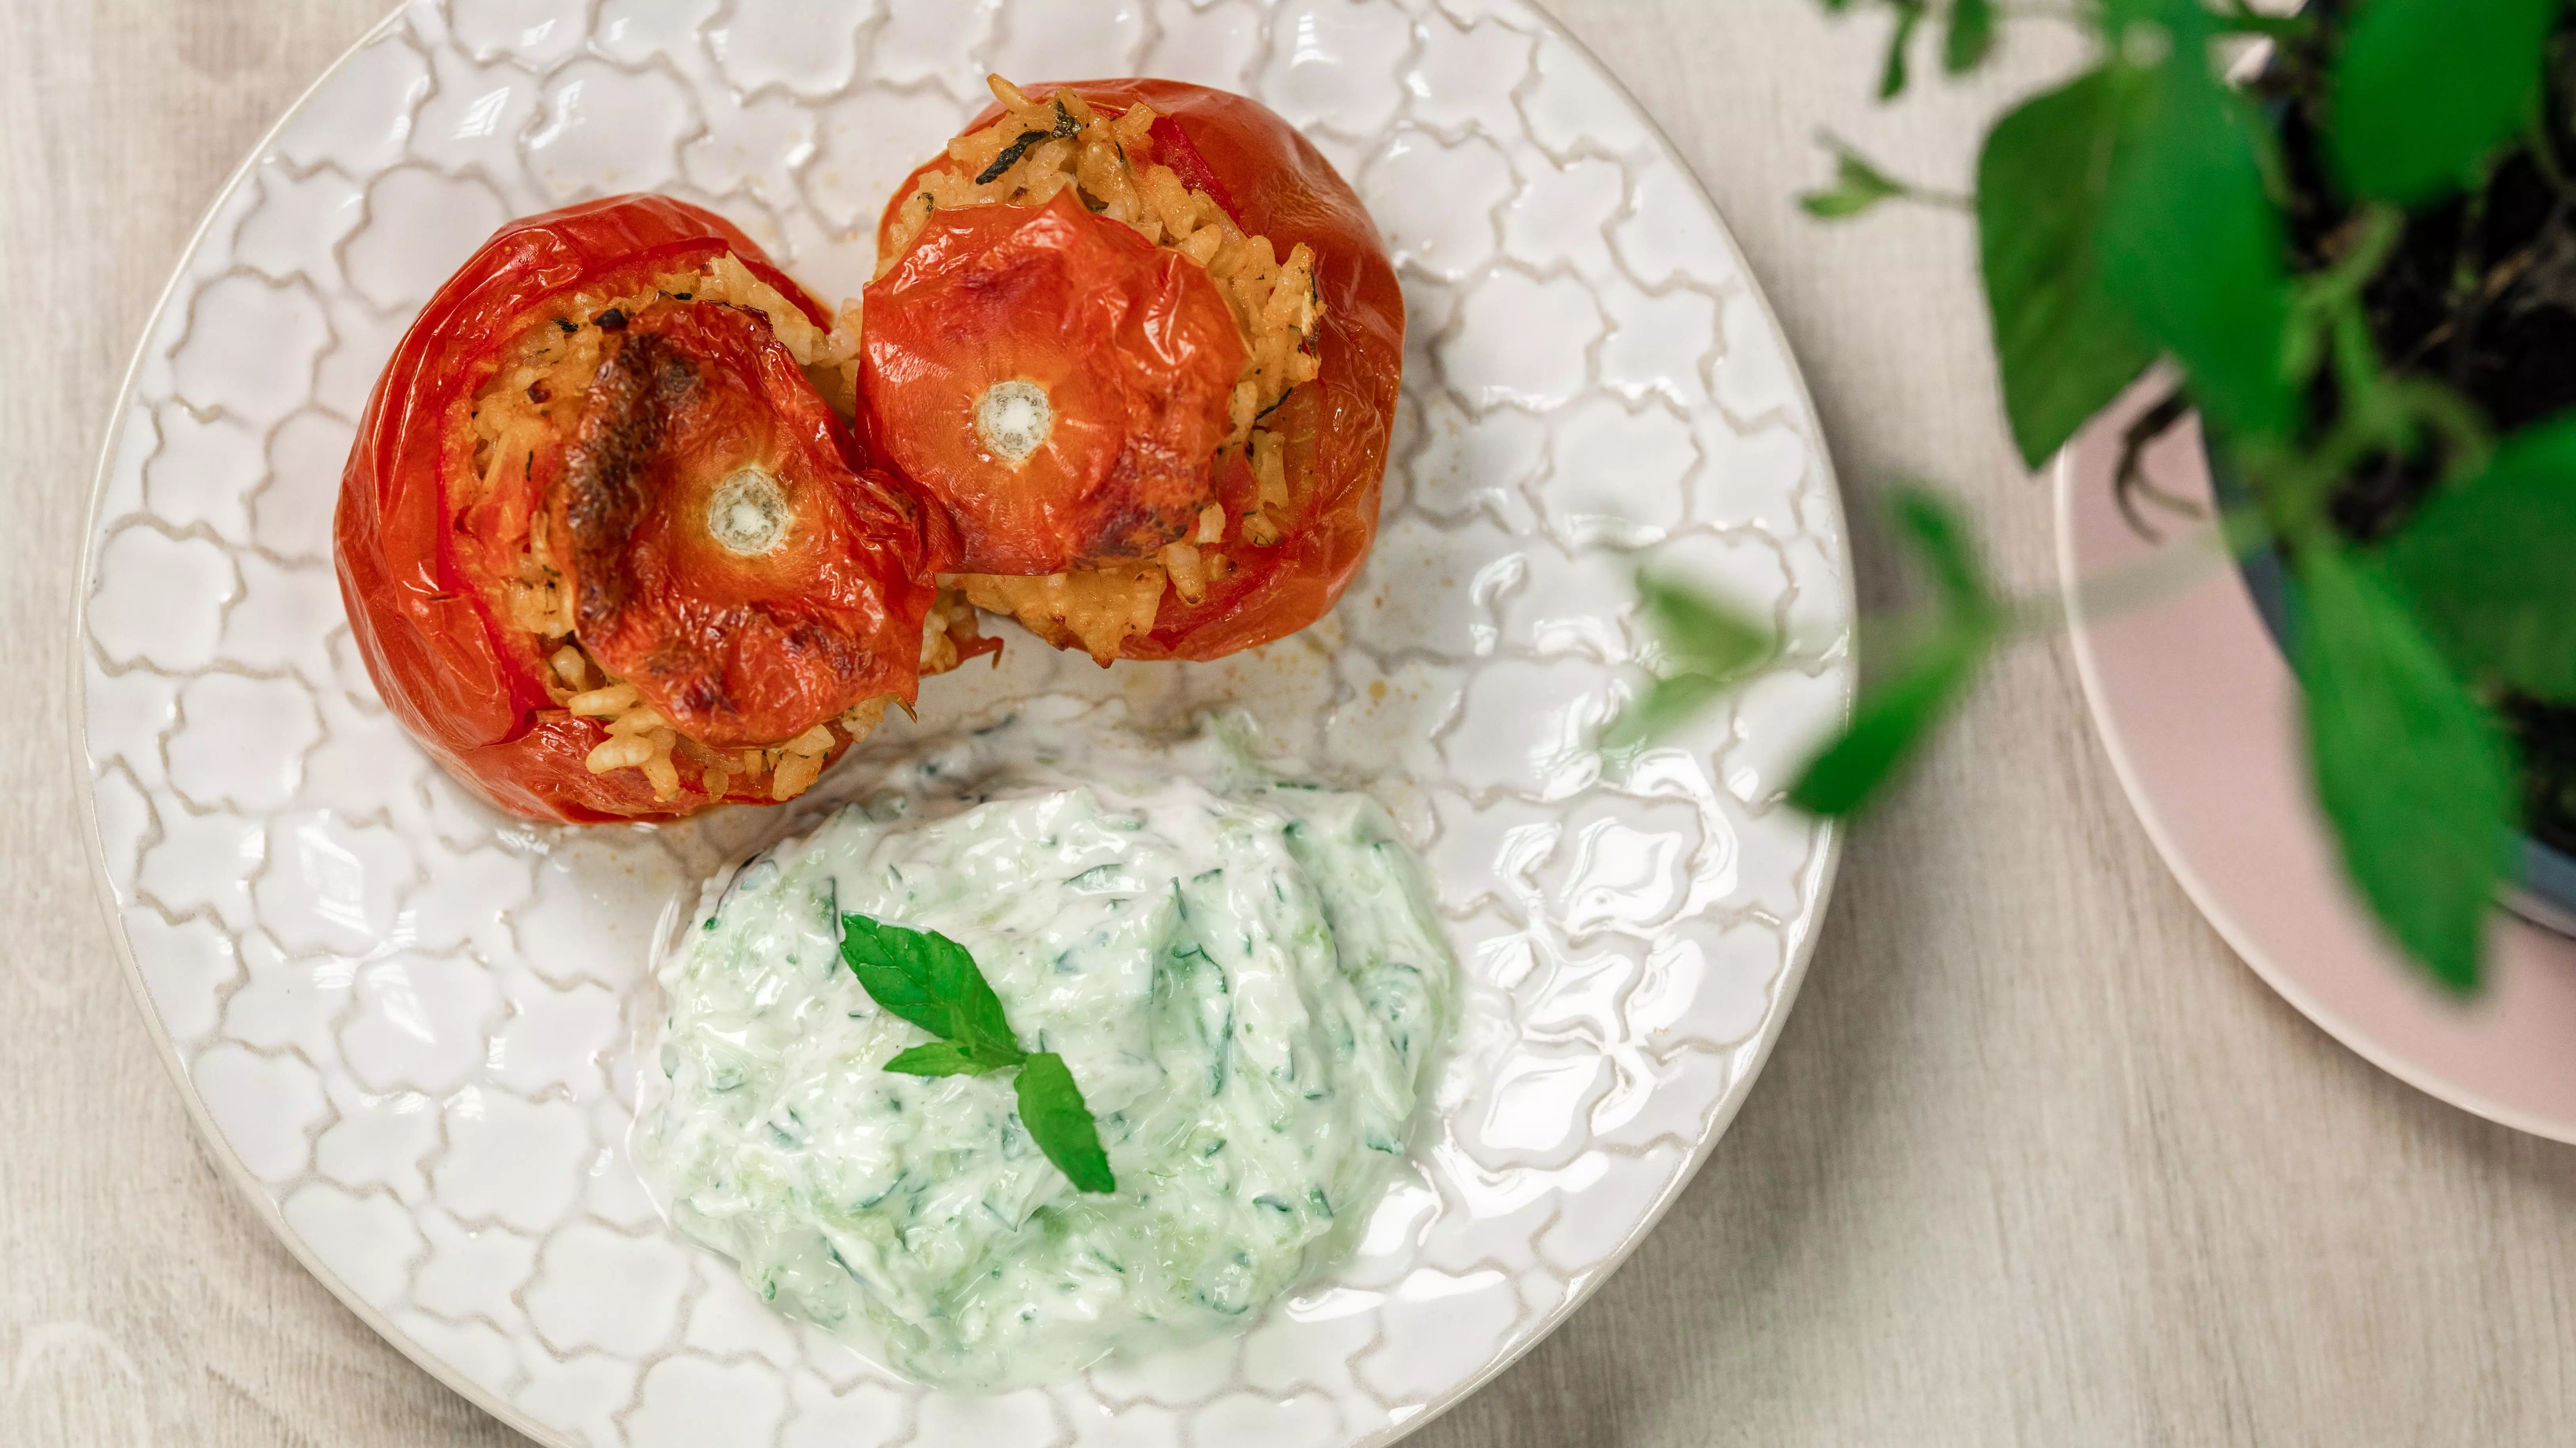 Griechische gefüllte Tomaten mit Tzatziki-Sauce | Blog | Malinca.de ...